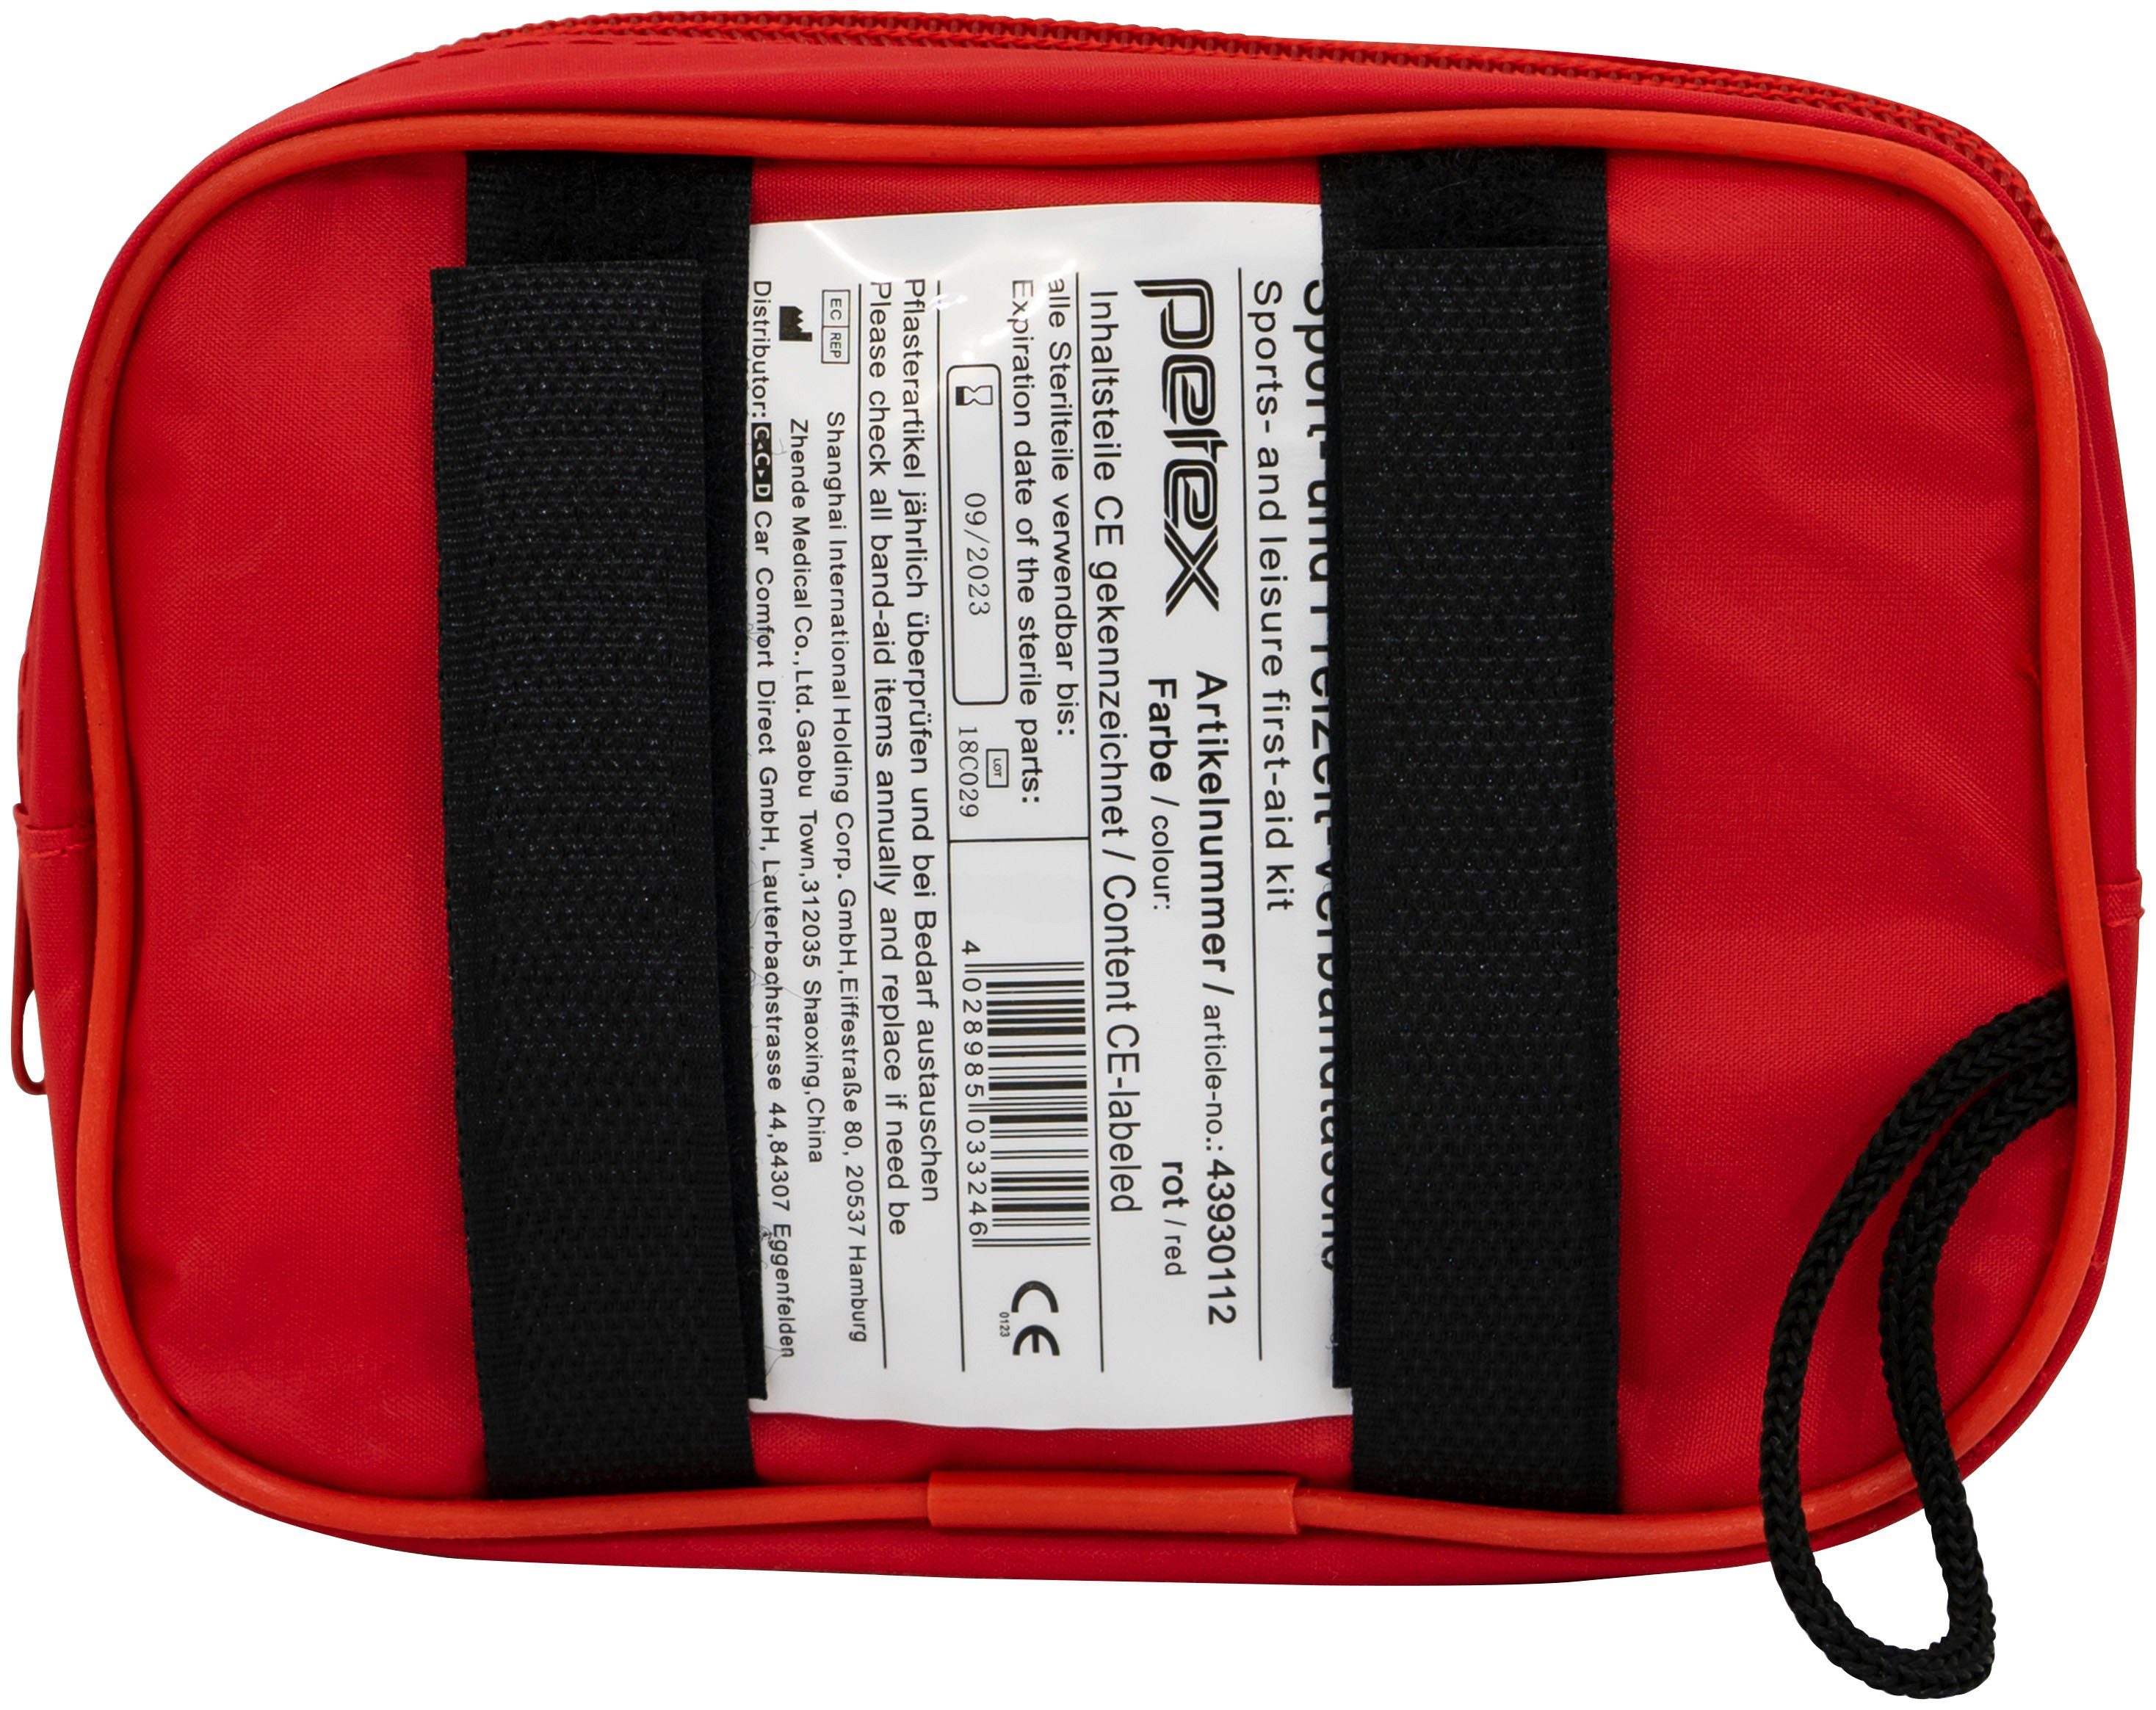 Petex KFZ-Verbandtasche, Sport- und Freizeit Verbandtasche, Tasche aus  Nylon-Gewebe inklusive Klett zur einfachen Befestigung